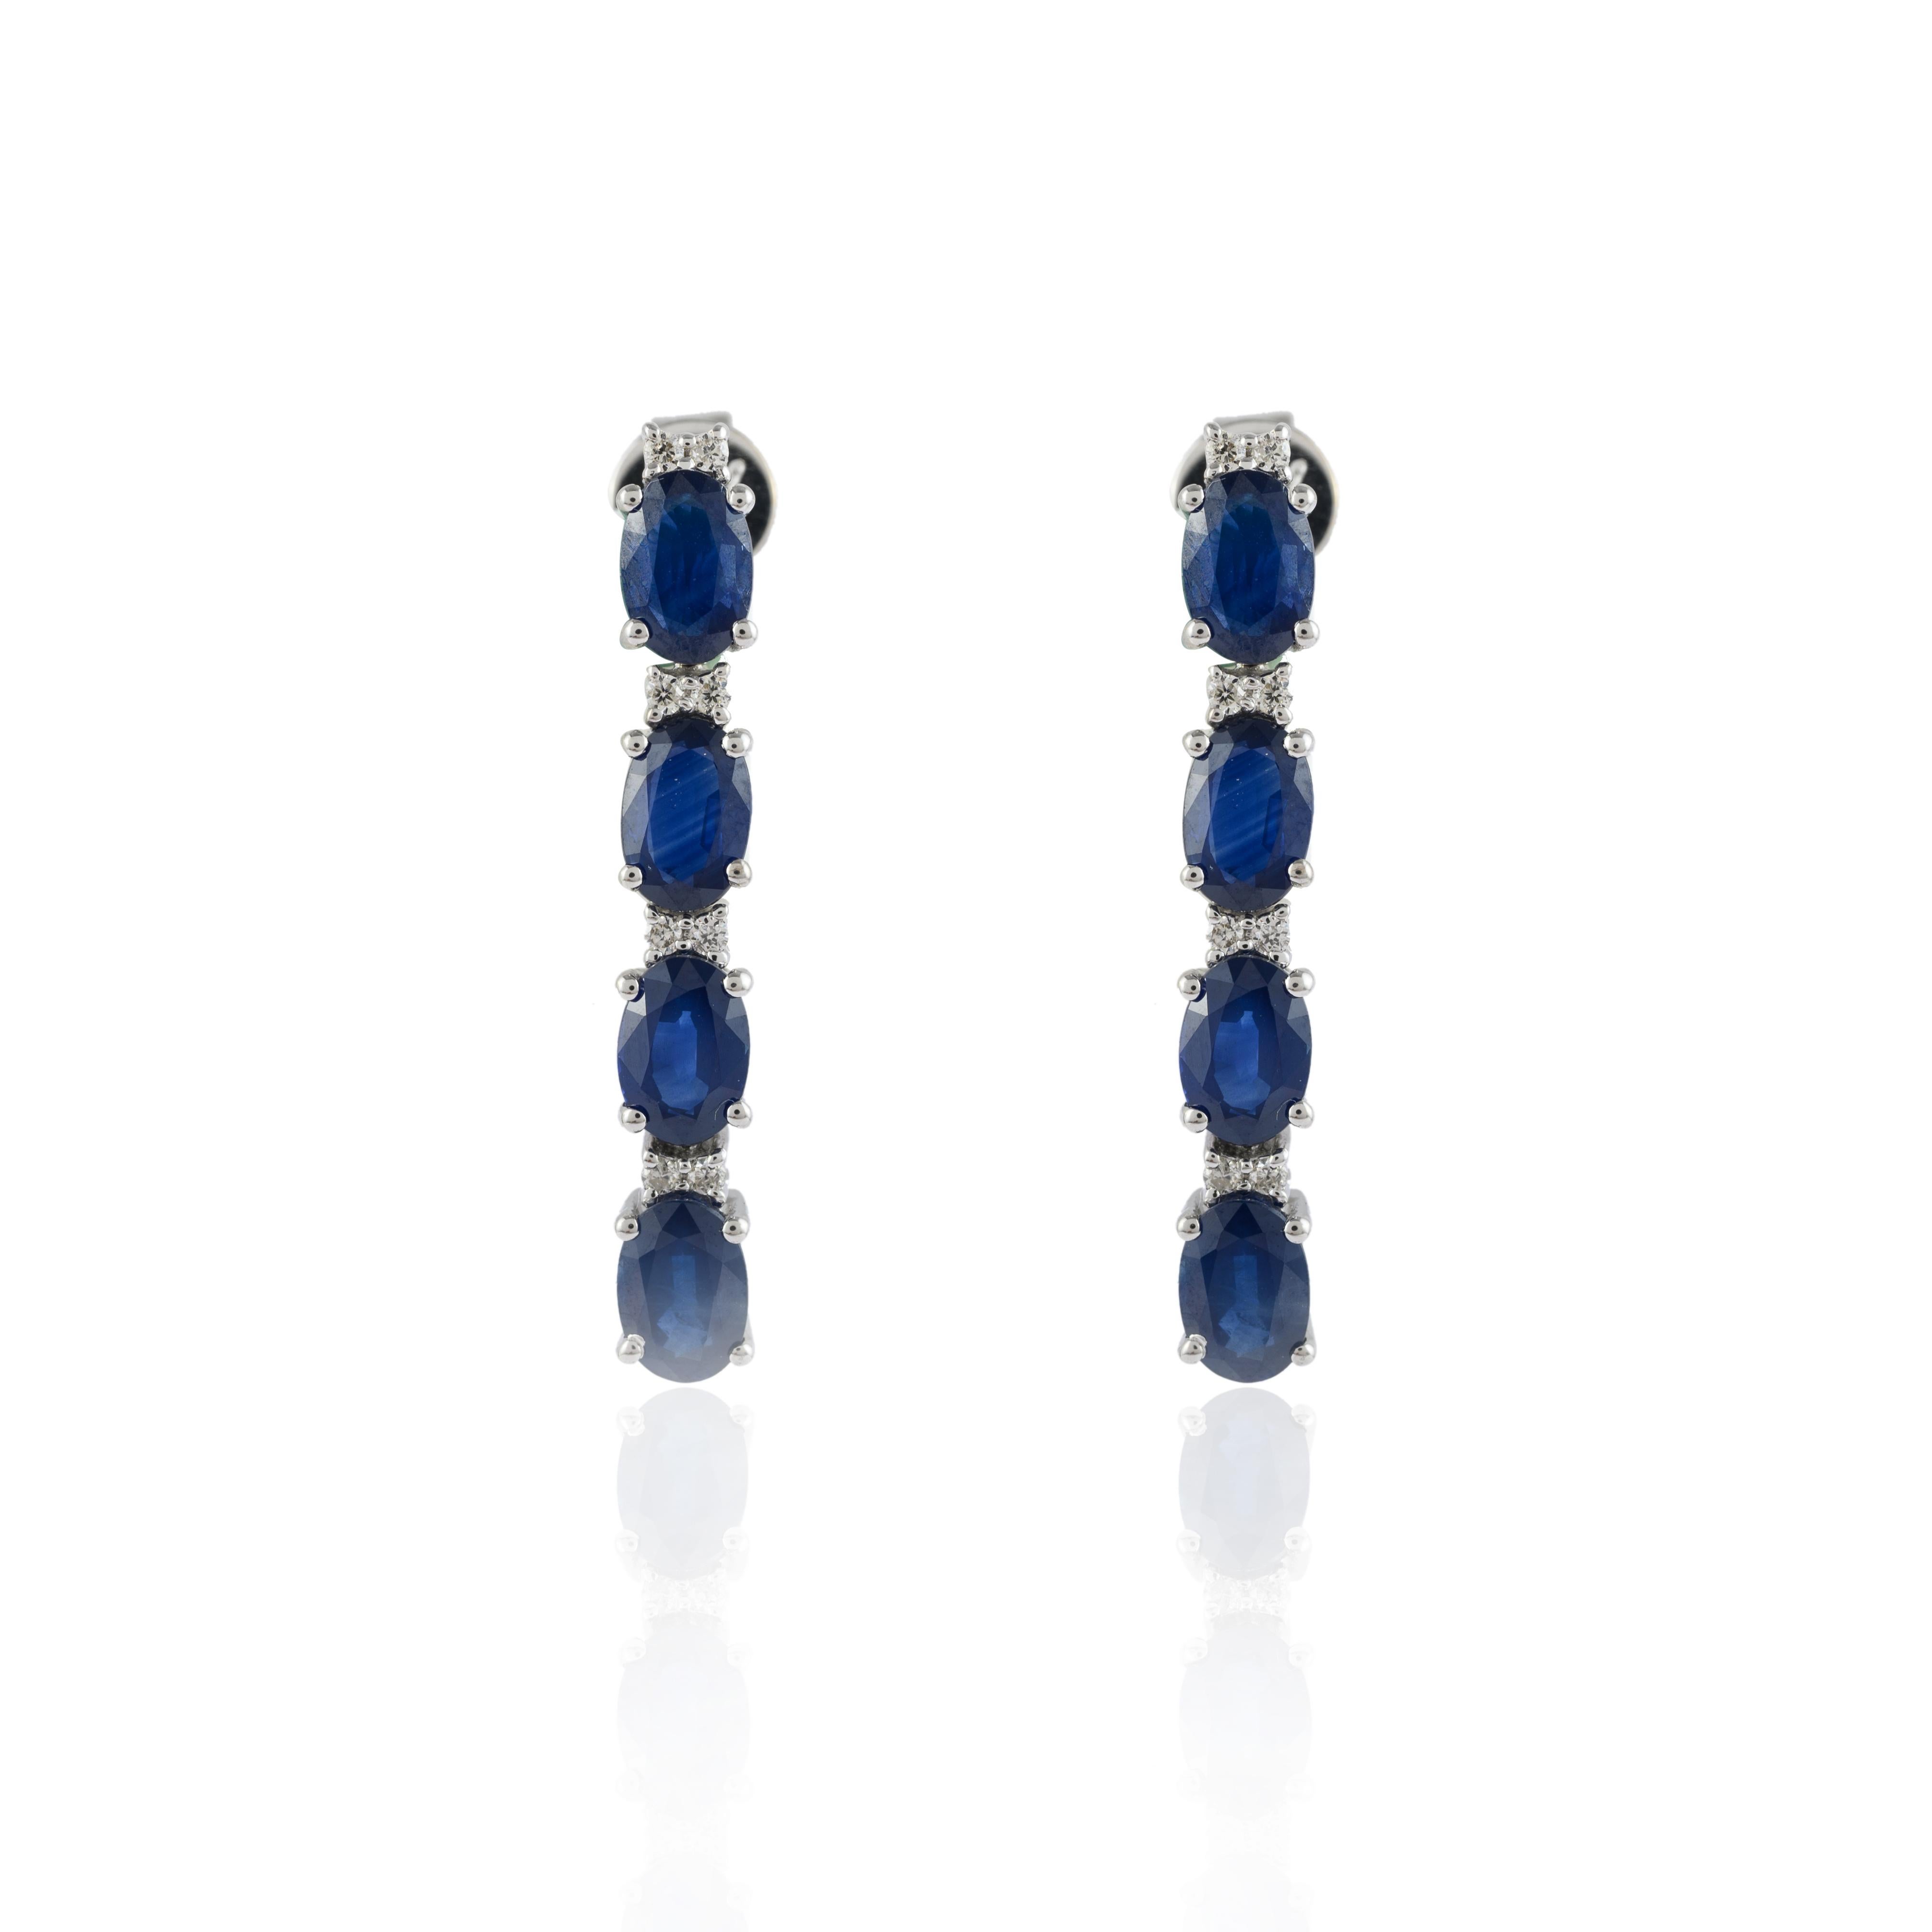 Diamant-Ohrringe mit blauem Saphir aus 14-karätigem Gold, die Ihren Look unterstreichen. Diese Ohrringe mit ovalem Schliff sorgen für einen funkelnden, luxuriösen Look.
Saphir fördert die Konzentration und baut Stress ab. 
Er ist abwechselnd mit